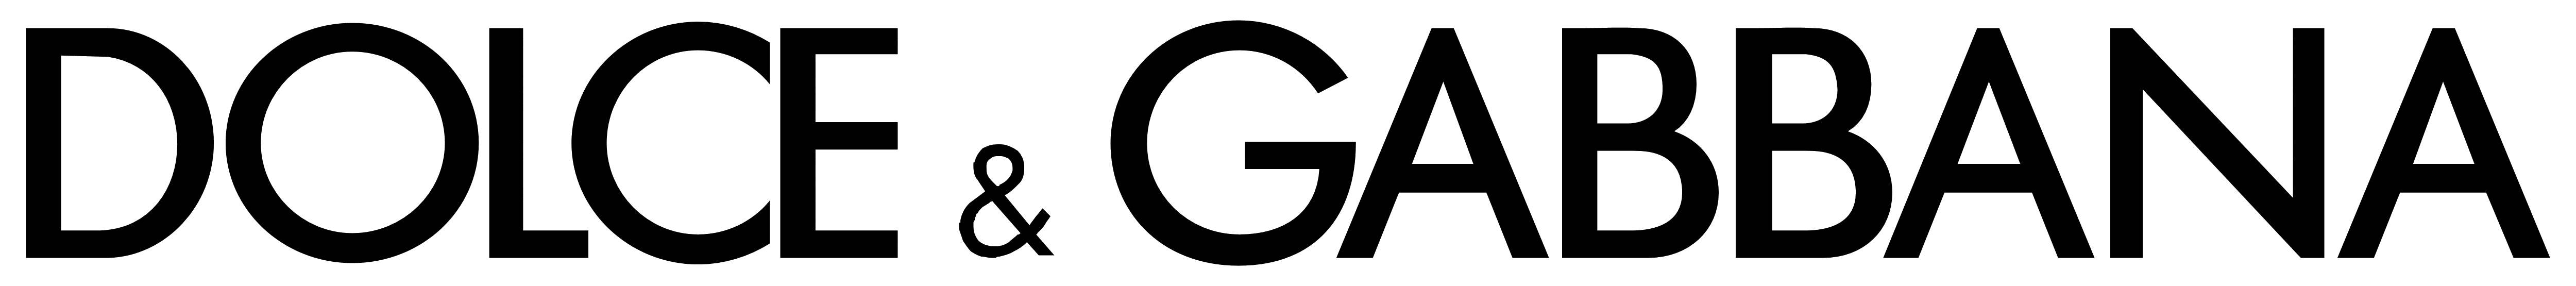 Dolce__Gabbana_logo_white_5000x555